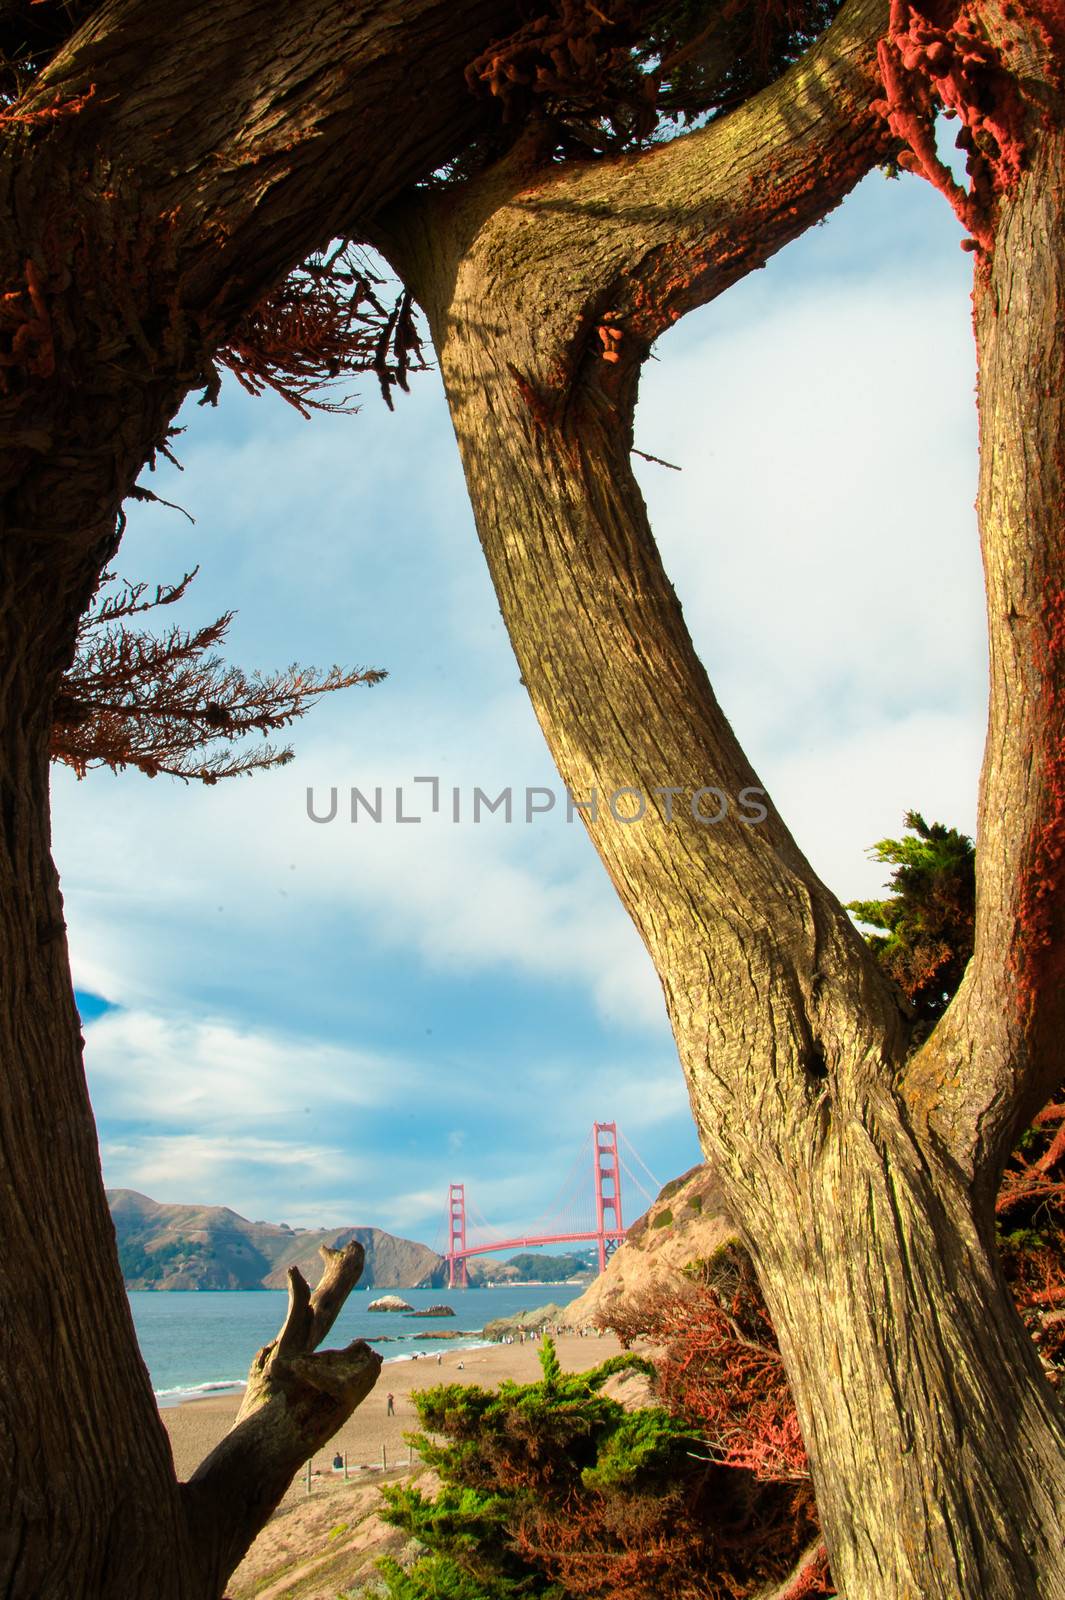 Golden Gate Bridge over a bay, San Francisco Bay, San Francisco, California, USA